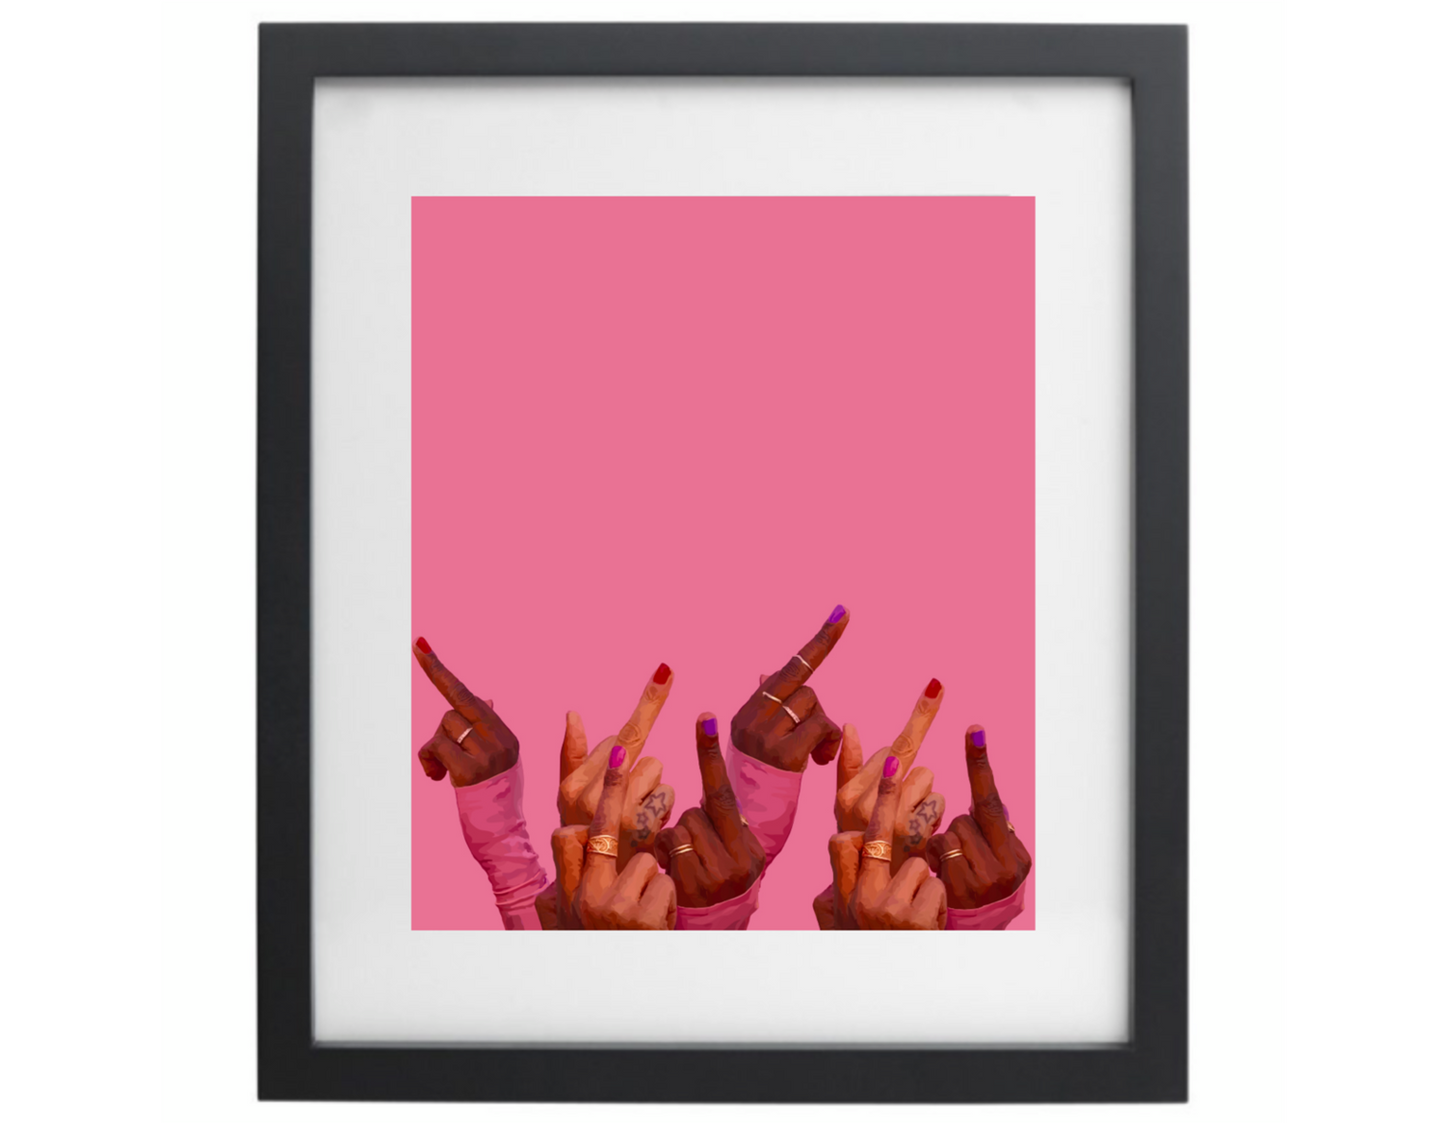 Pink middle finger artwork in a black frame